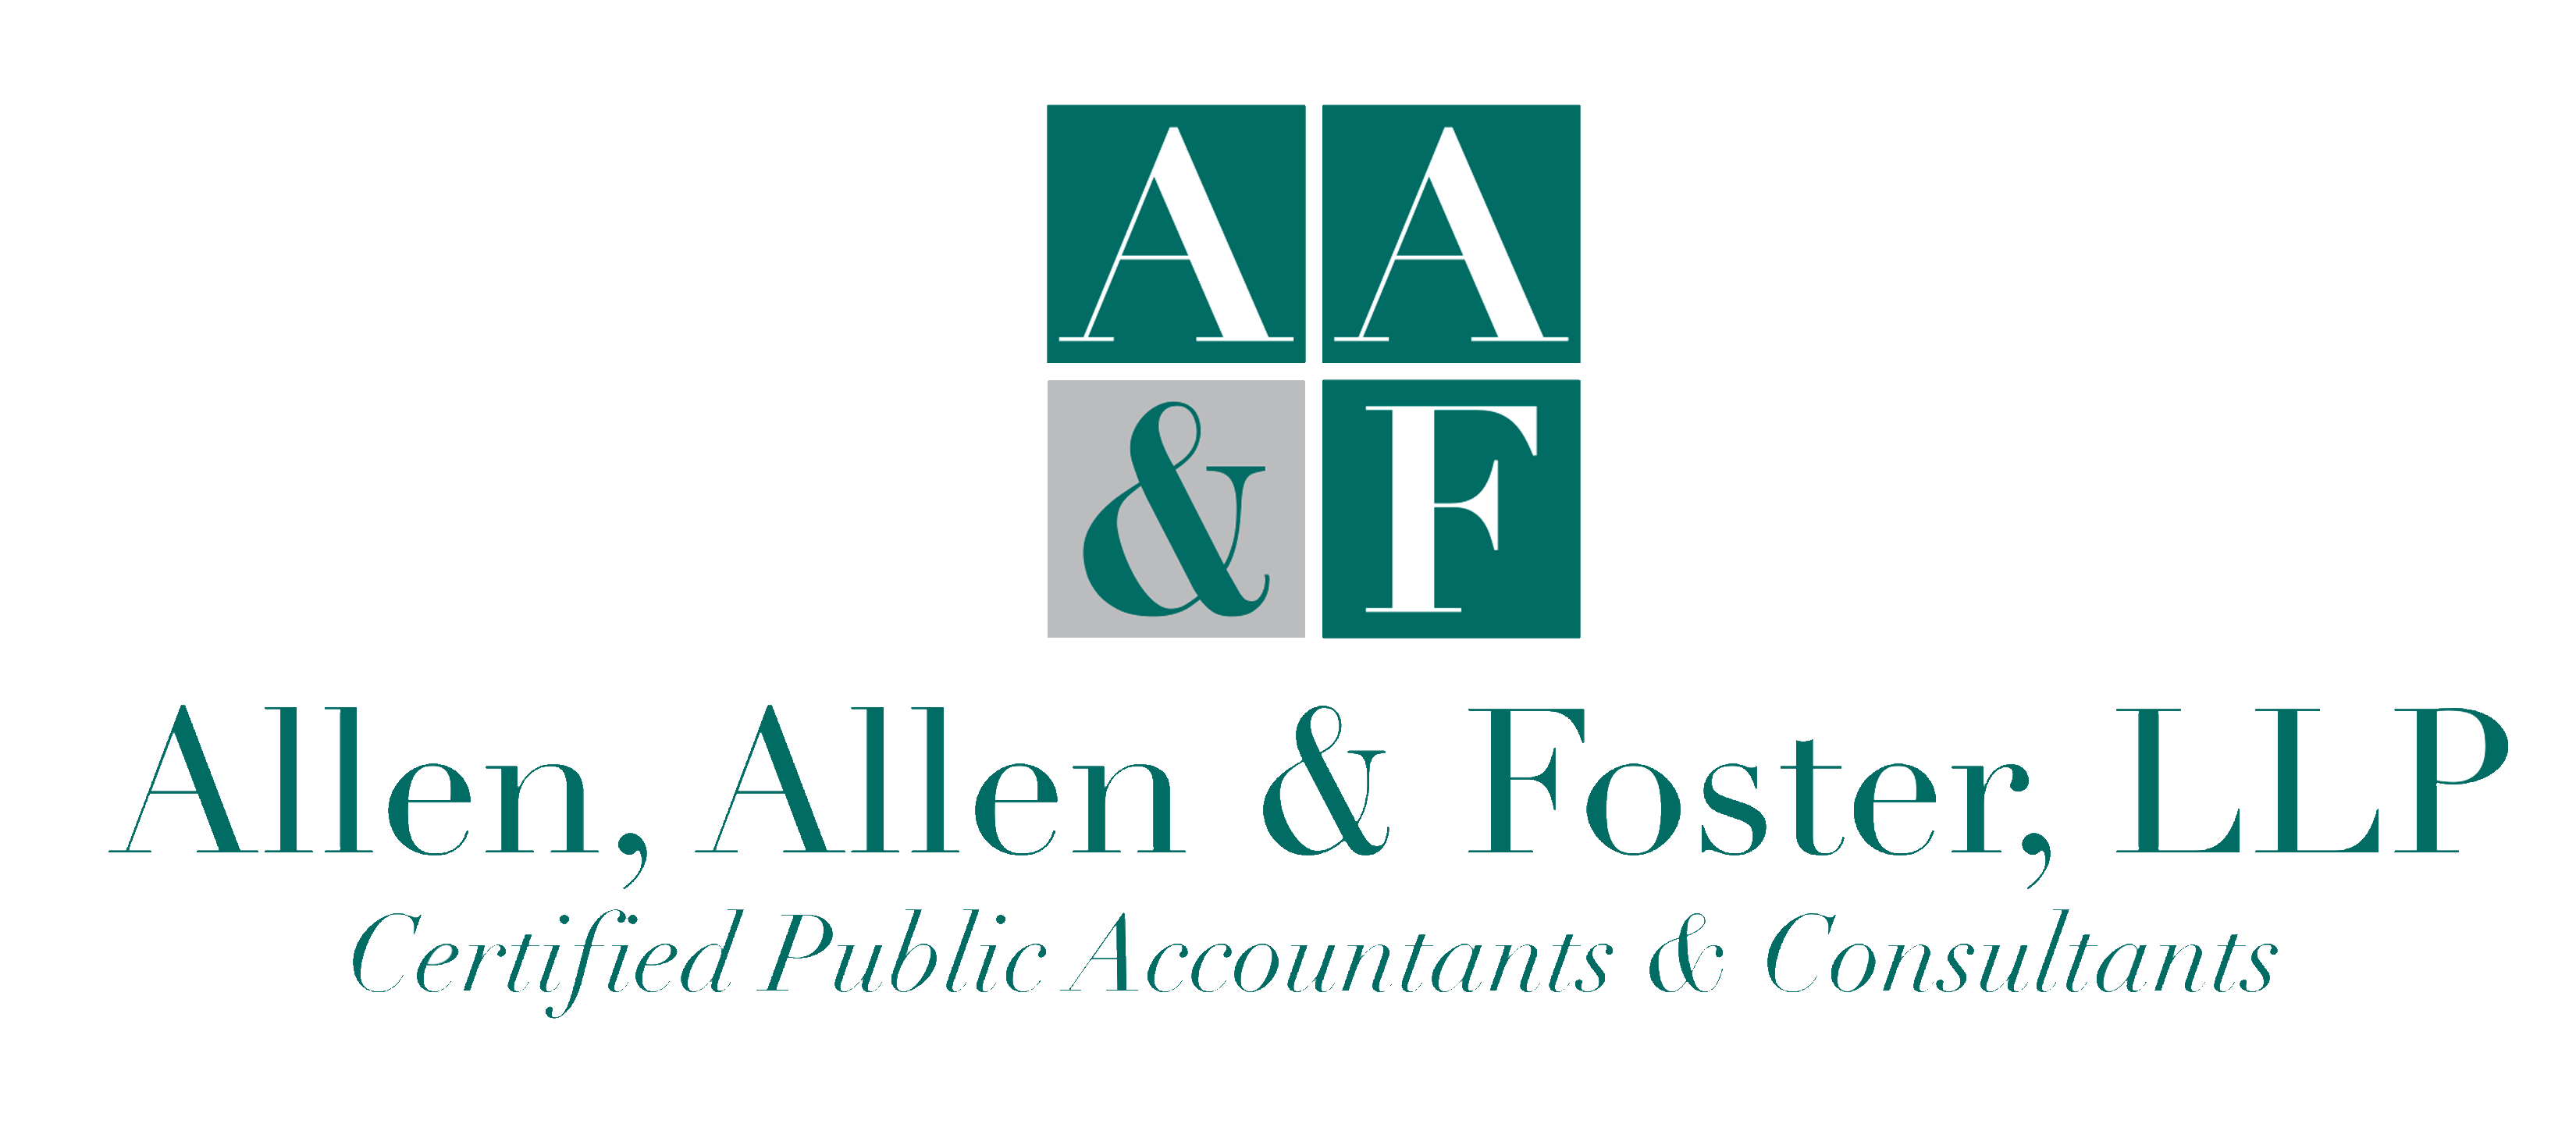 Allen, Allen & Foster | Jeff & Beverley Allen